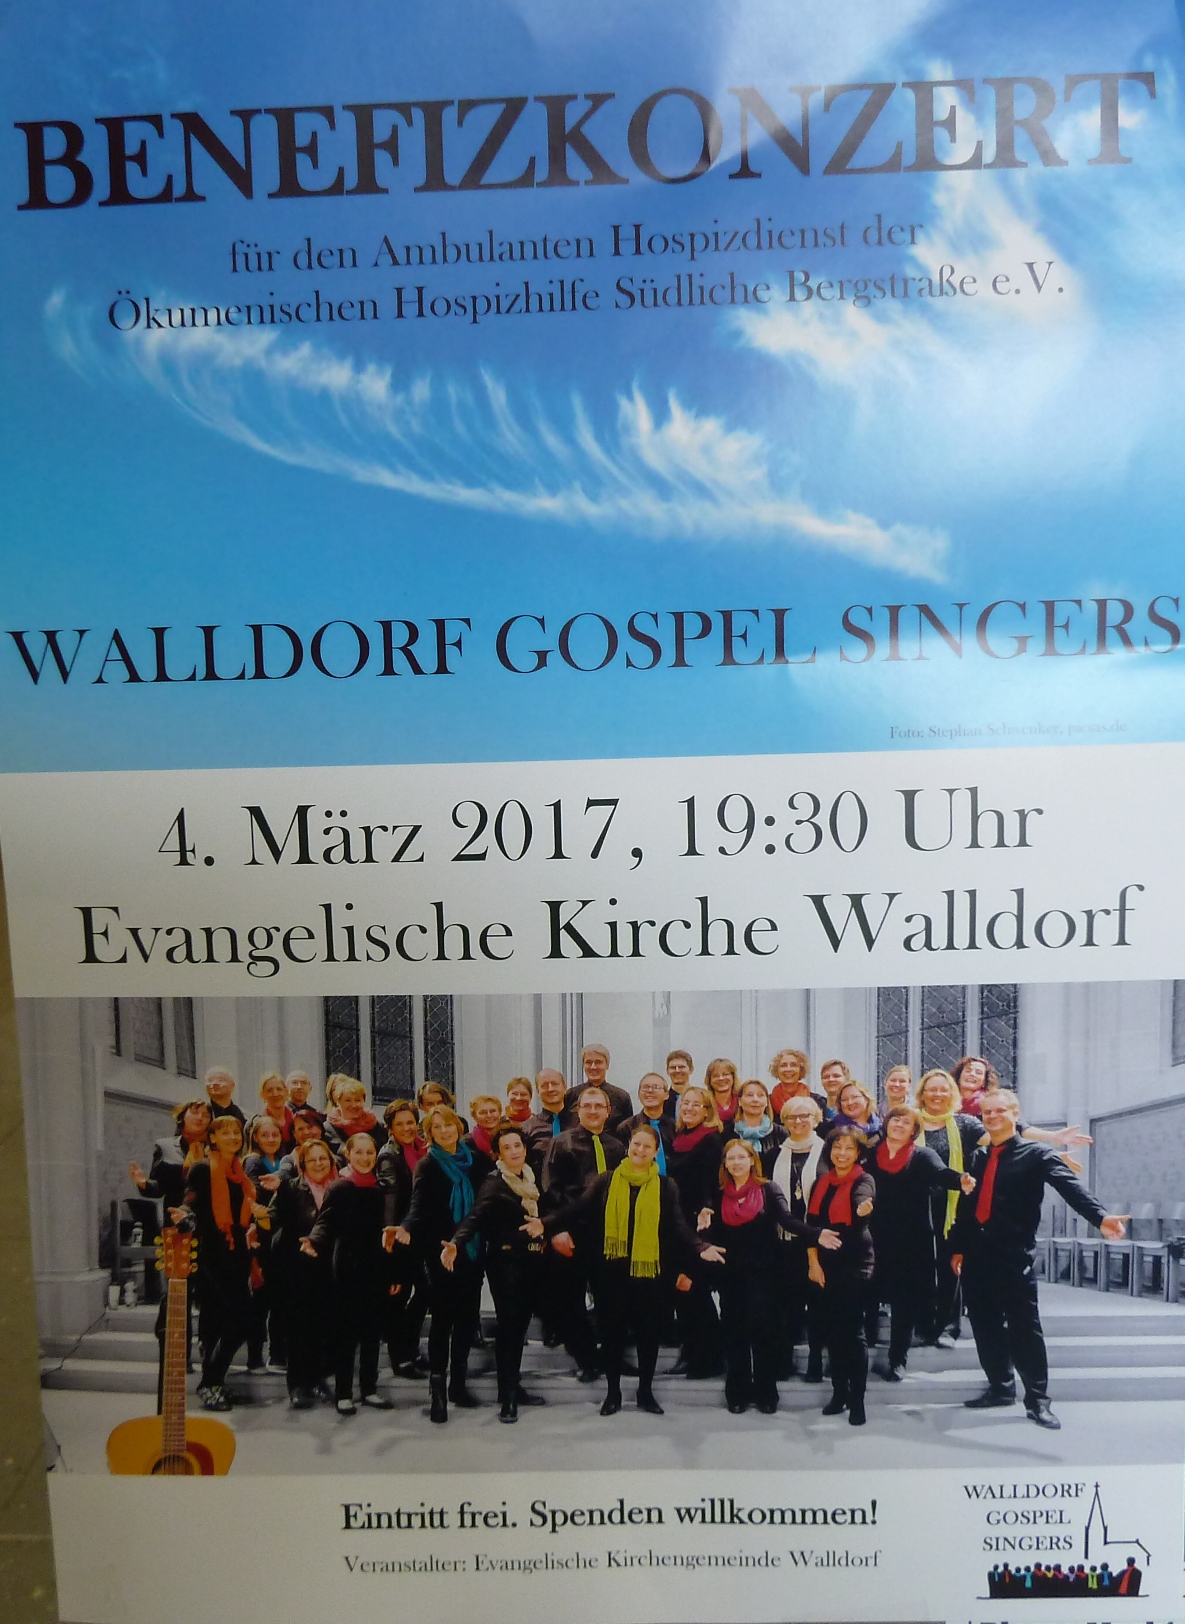 Benefizkonzert der Walldorf Gospel Singers am 04. März